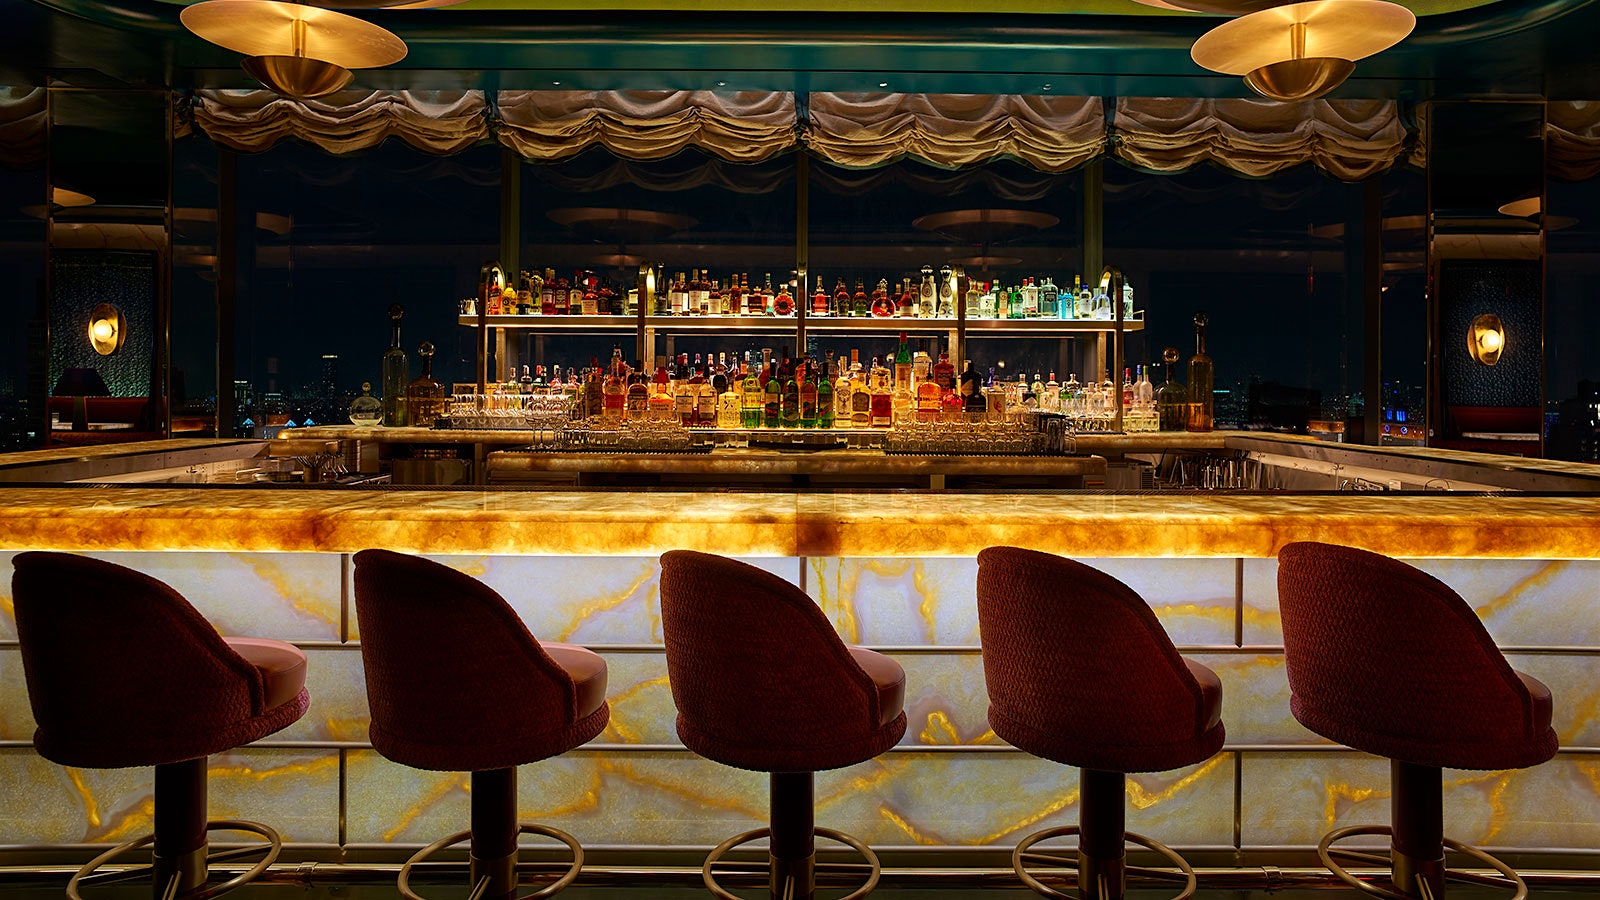  Una mirada nocturna al bar de Nubeluz con detalles dorados y esmeraldas y lujosos taburetes de bar color burdeos